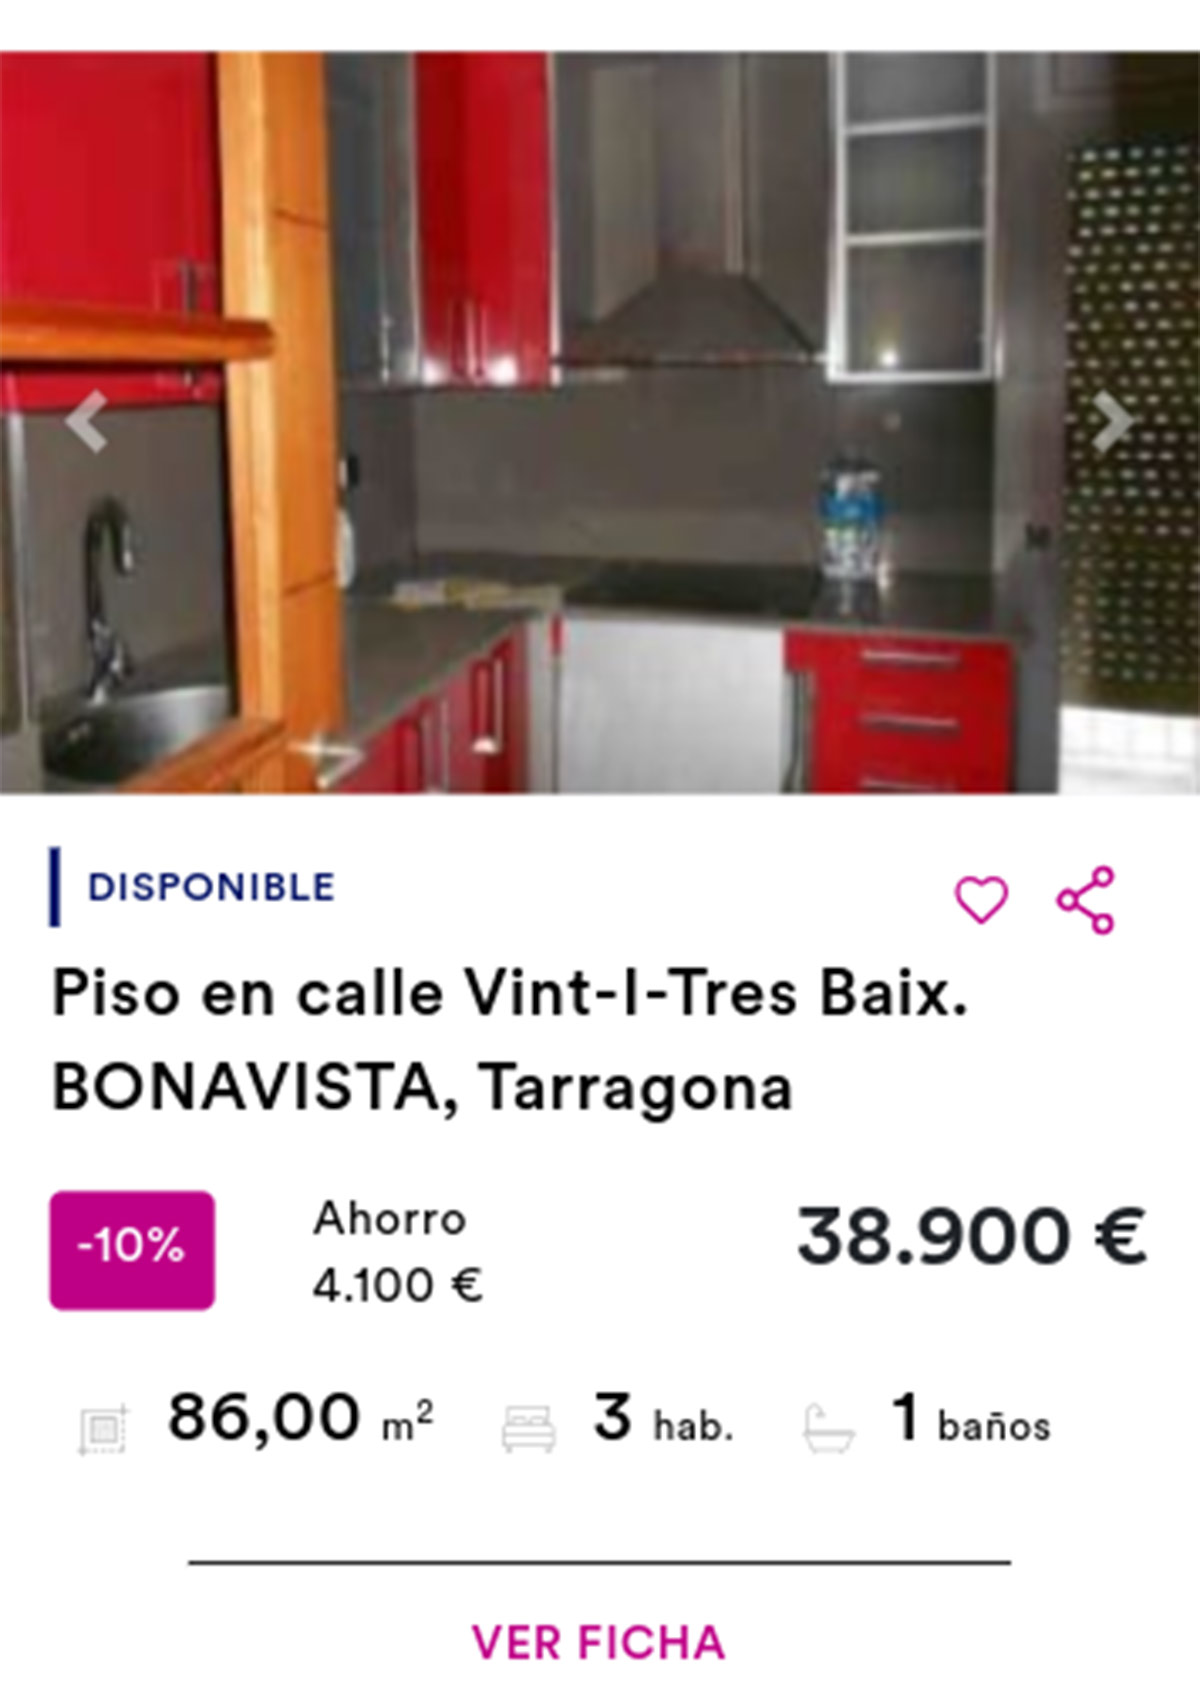 Piso de Cajamar por 38.900 euros